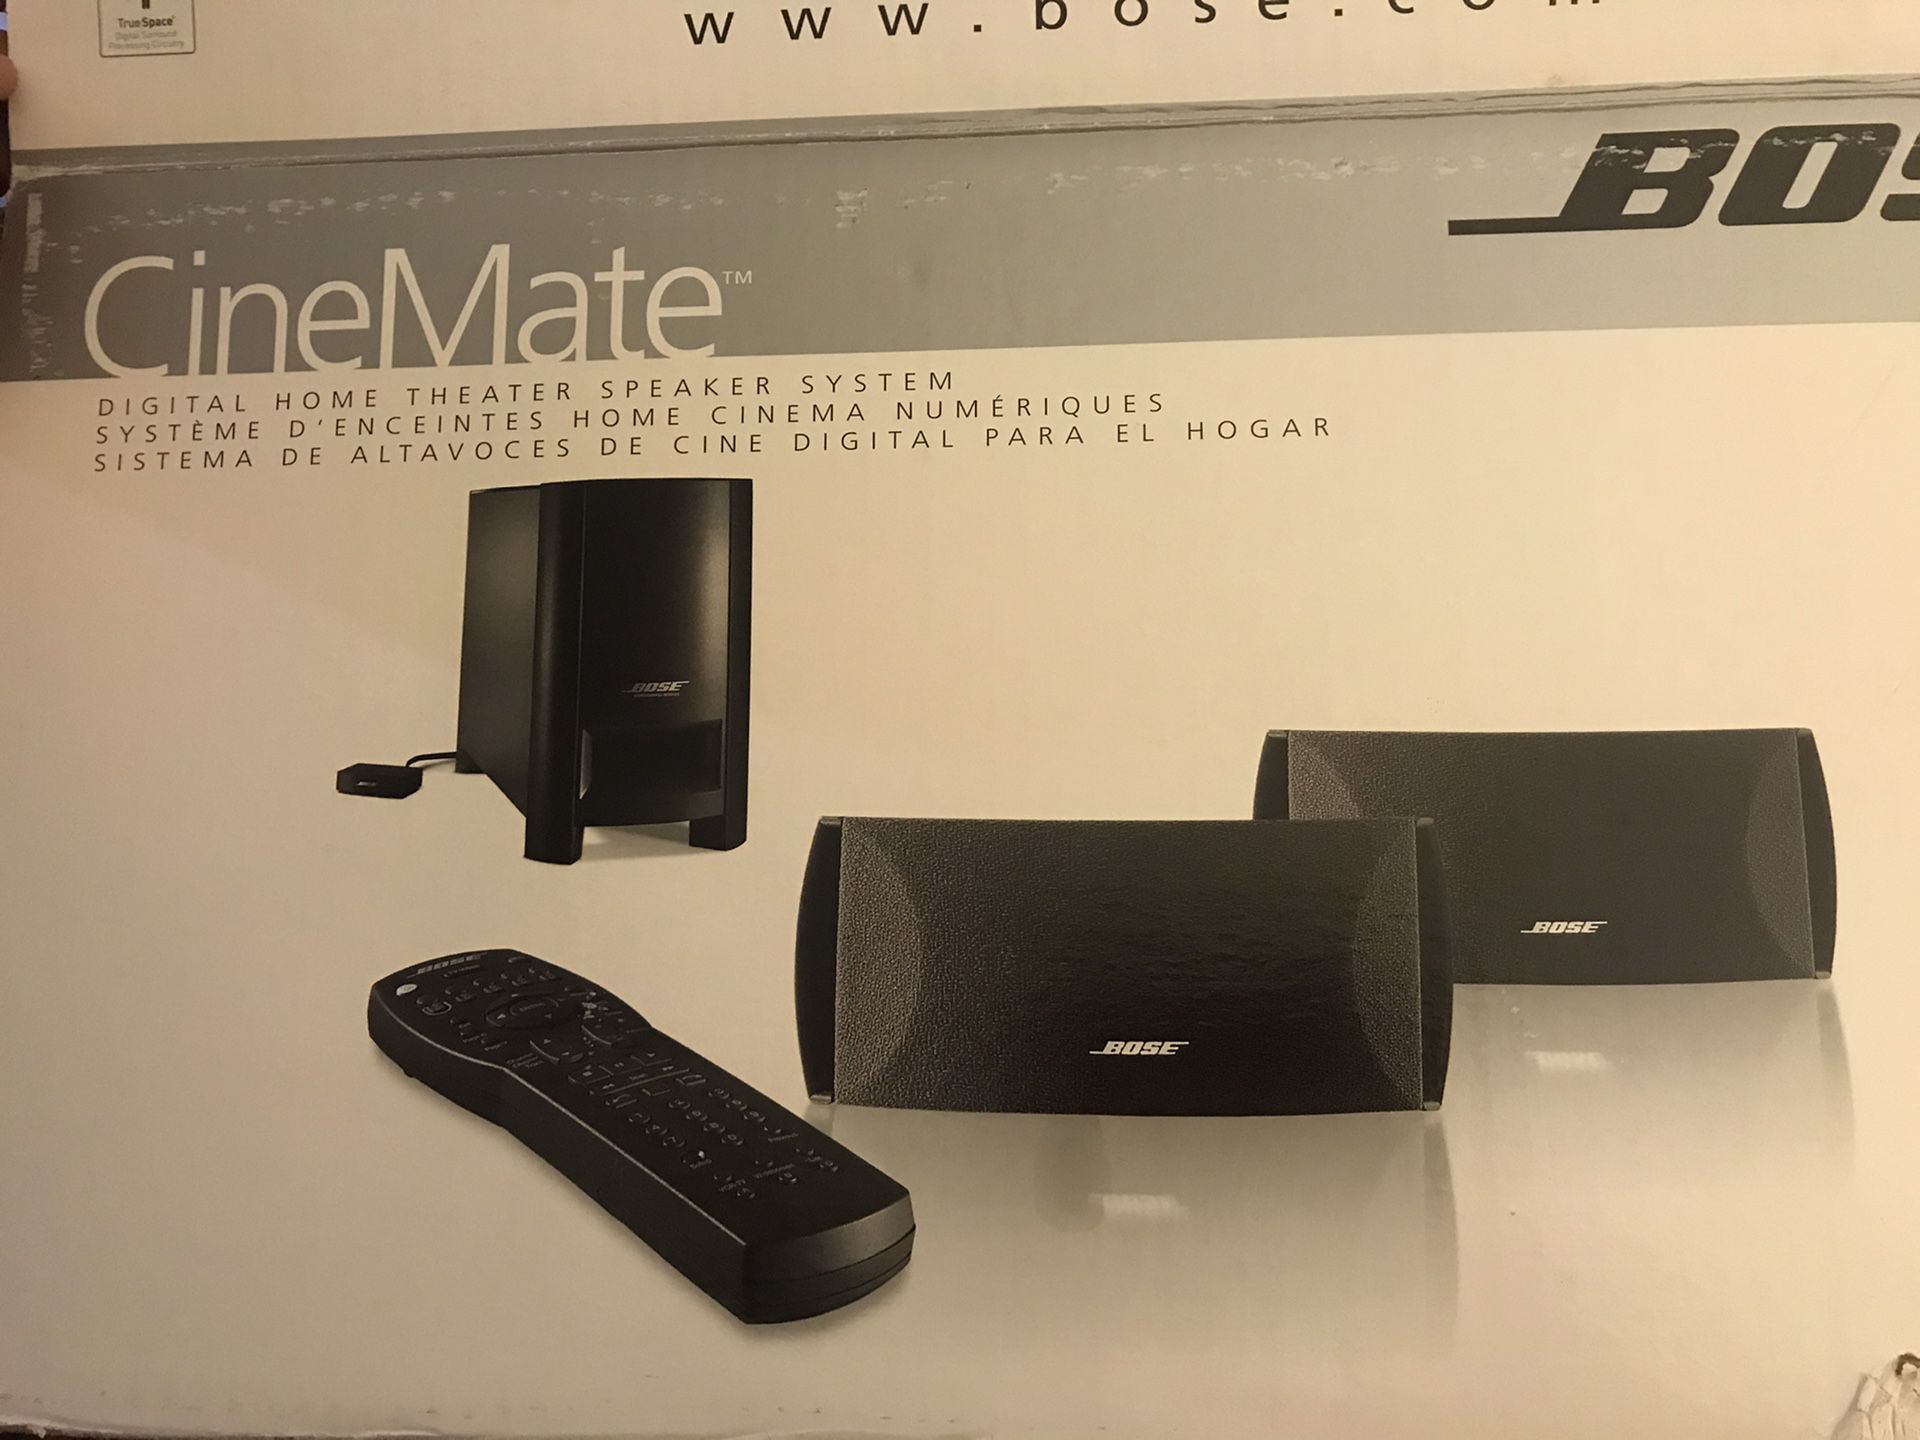 Cinemate digital home theater speaker system (older version)